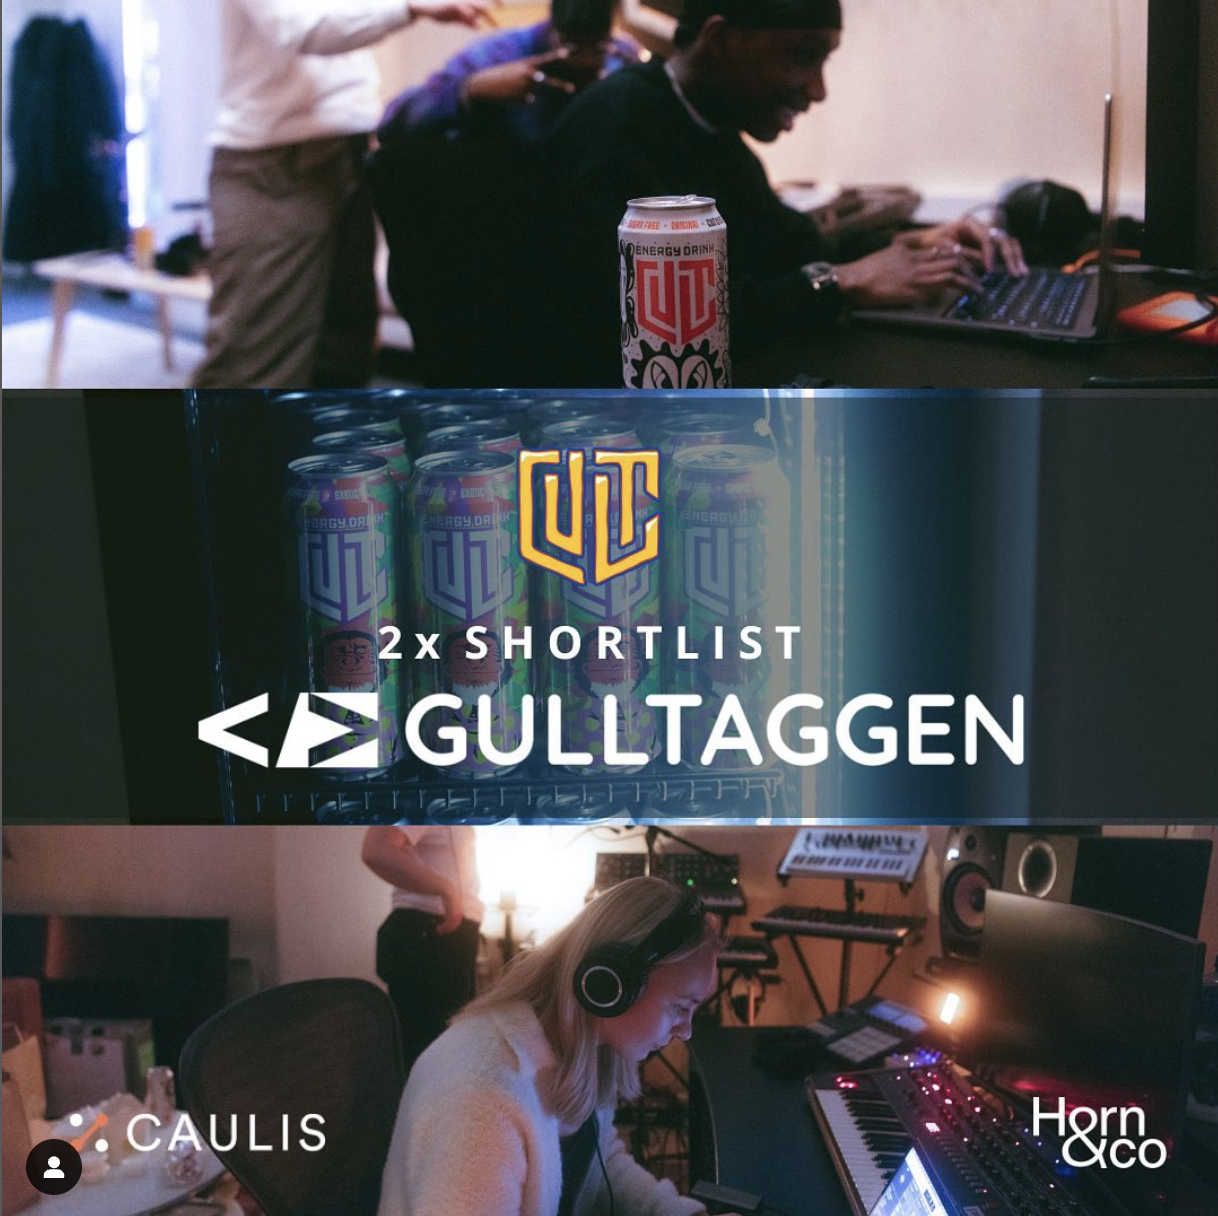 Vi er nominert til Gulltaggen for lanseringen av Cult i samarbeid med Caulis og Nora Collective.